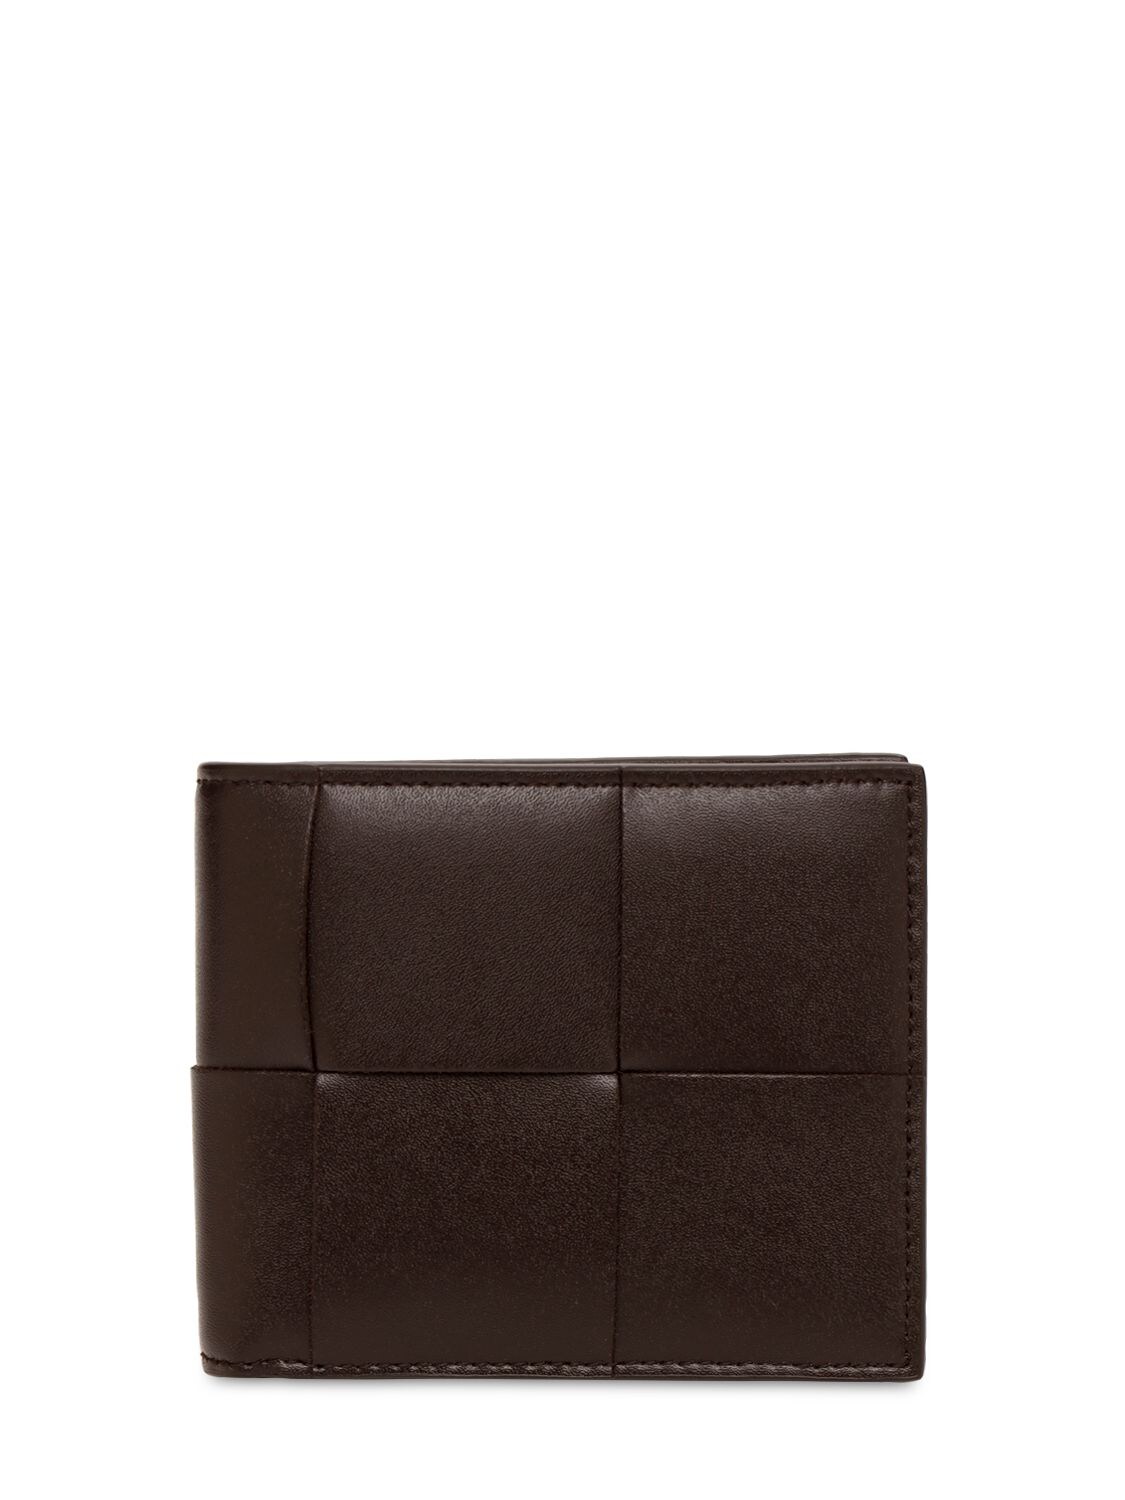 Maxi Intreccio Leather Billfold Wallet